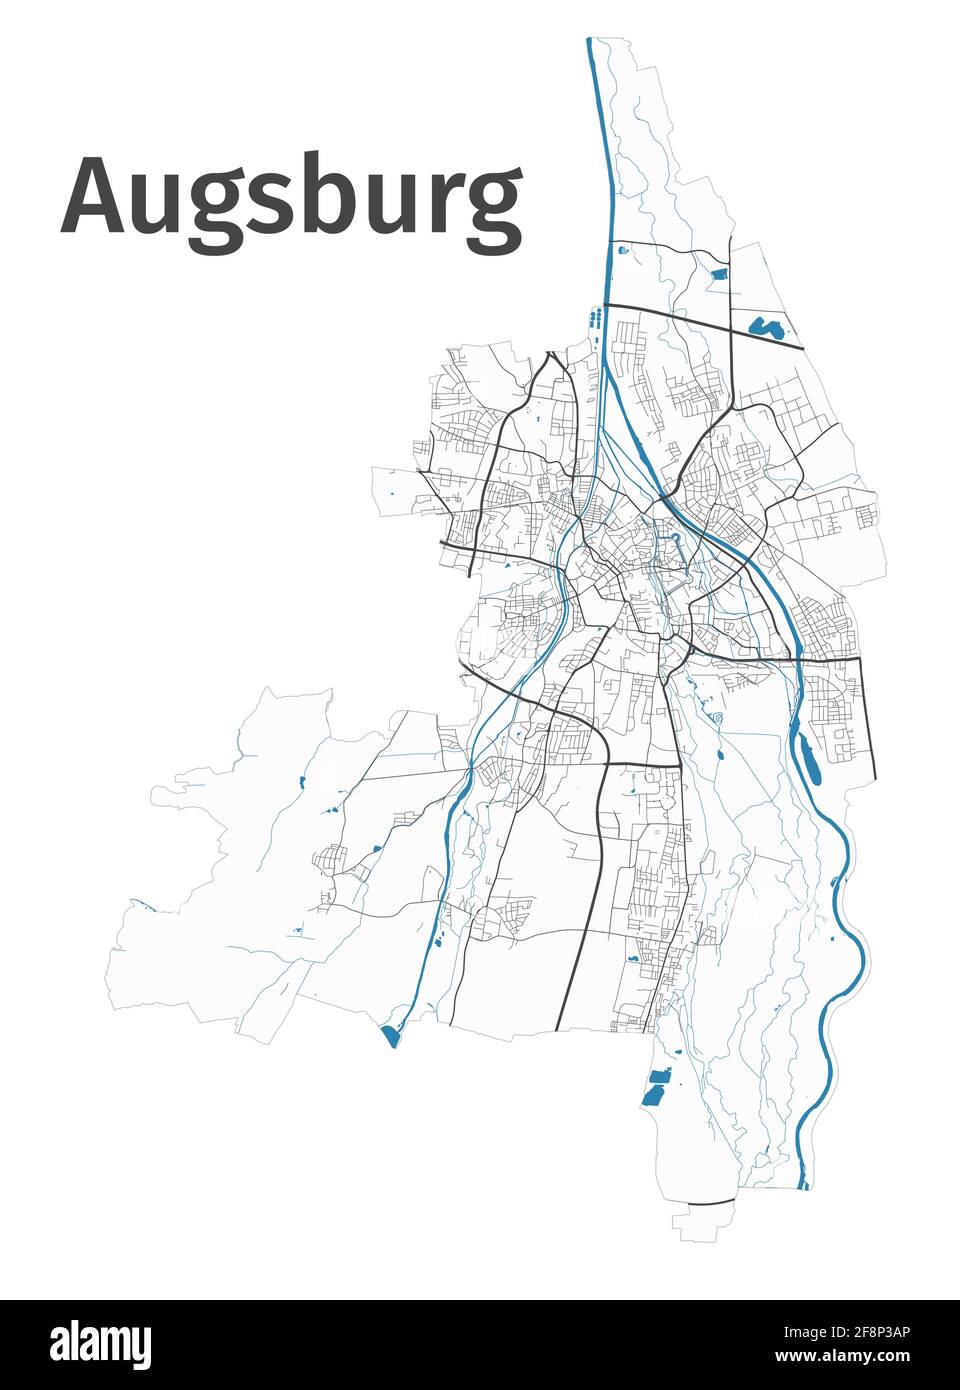 Mappa di Augusta. Mappa dettagliata dell'area amministrativa della città di Augusta. Panorama cittadino. Illustrazione vettoriale priva di royalty. Mappa con autostrade, stre Illustrazione Vettoriale